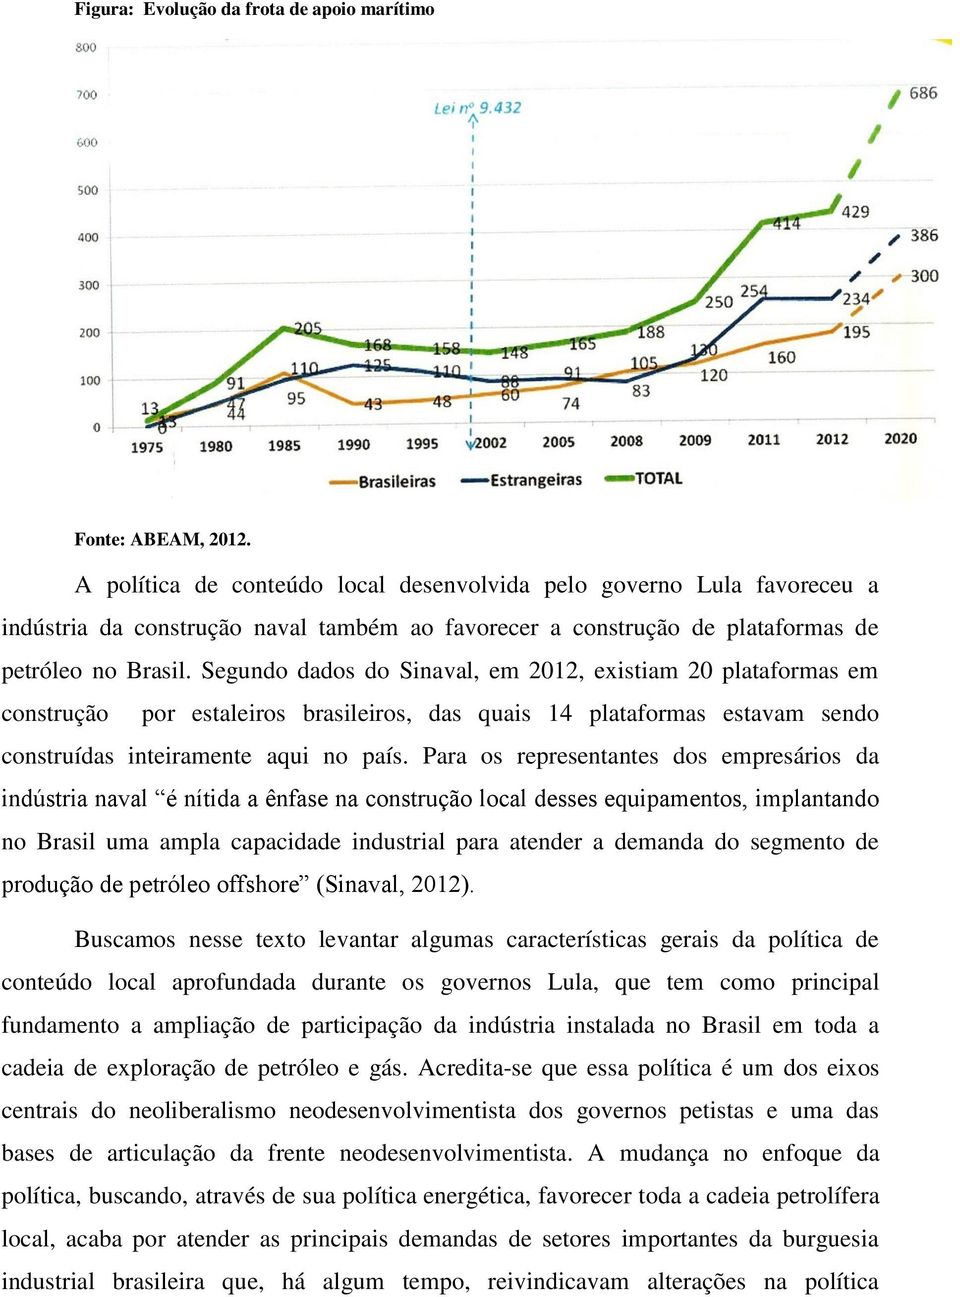 Segundo dados do Sinaval, em 2012, existiam 20 plataformas em construção por estaleiros brasileiros, das quais 14 plataformas estavam sendo construídas inteiramente aqui no país.